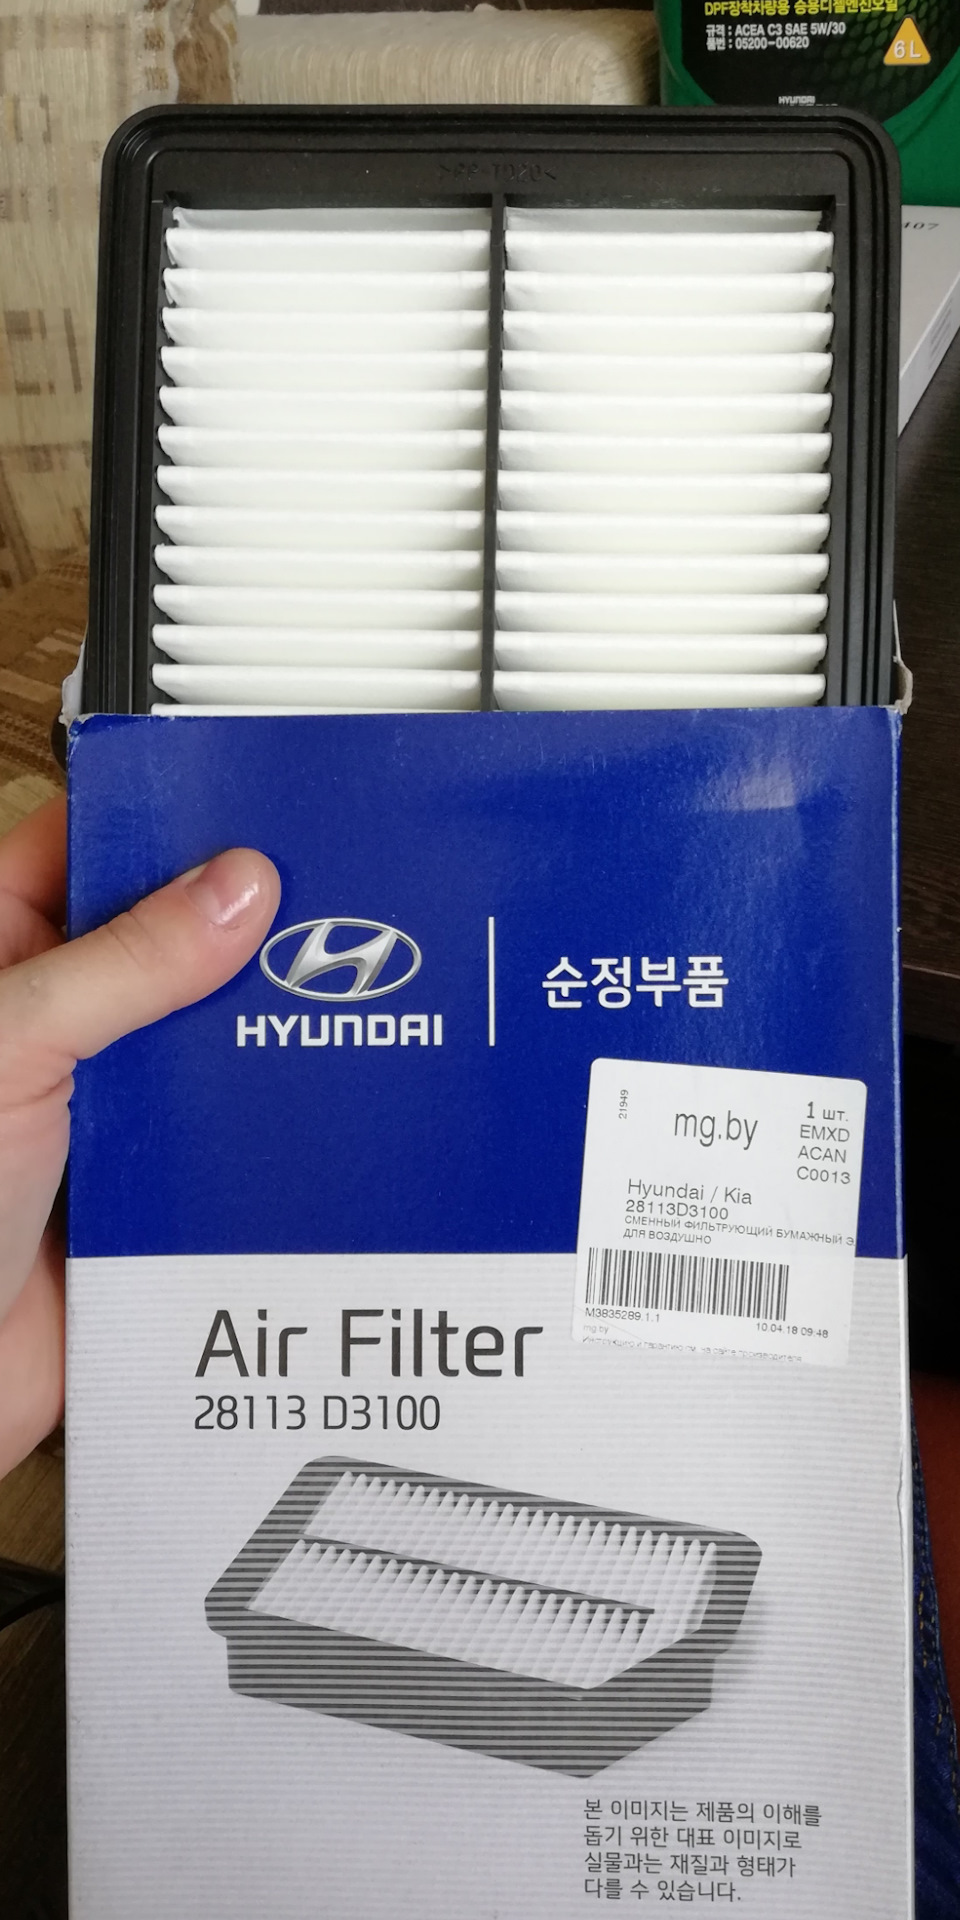 28113 фильтр воздушный. 28113l1000 фильтр воздушный. Hyundai / Kia 28113 d3100. Hyundai/Kia 28113aa100 фильтр воздушный. 28113-3l000.